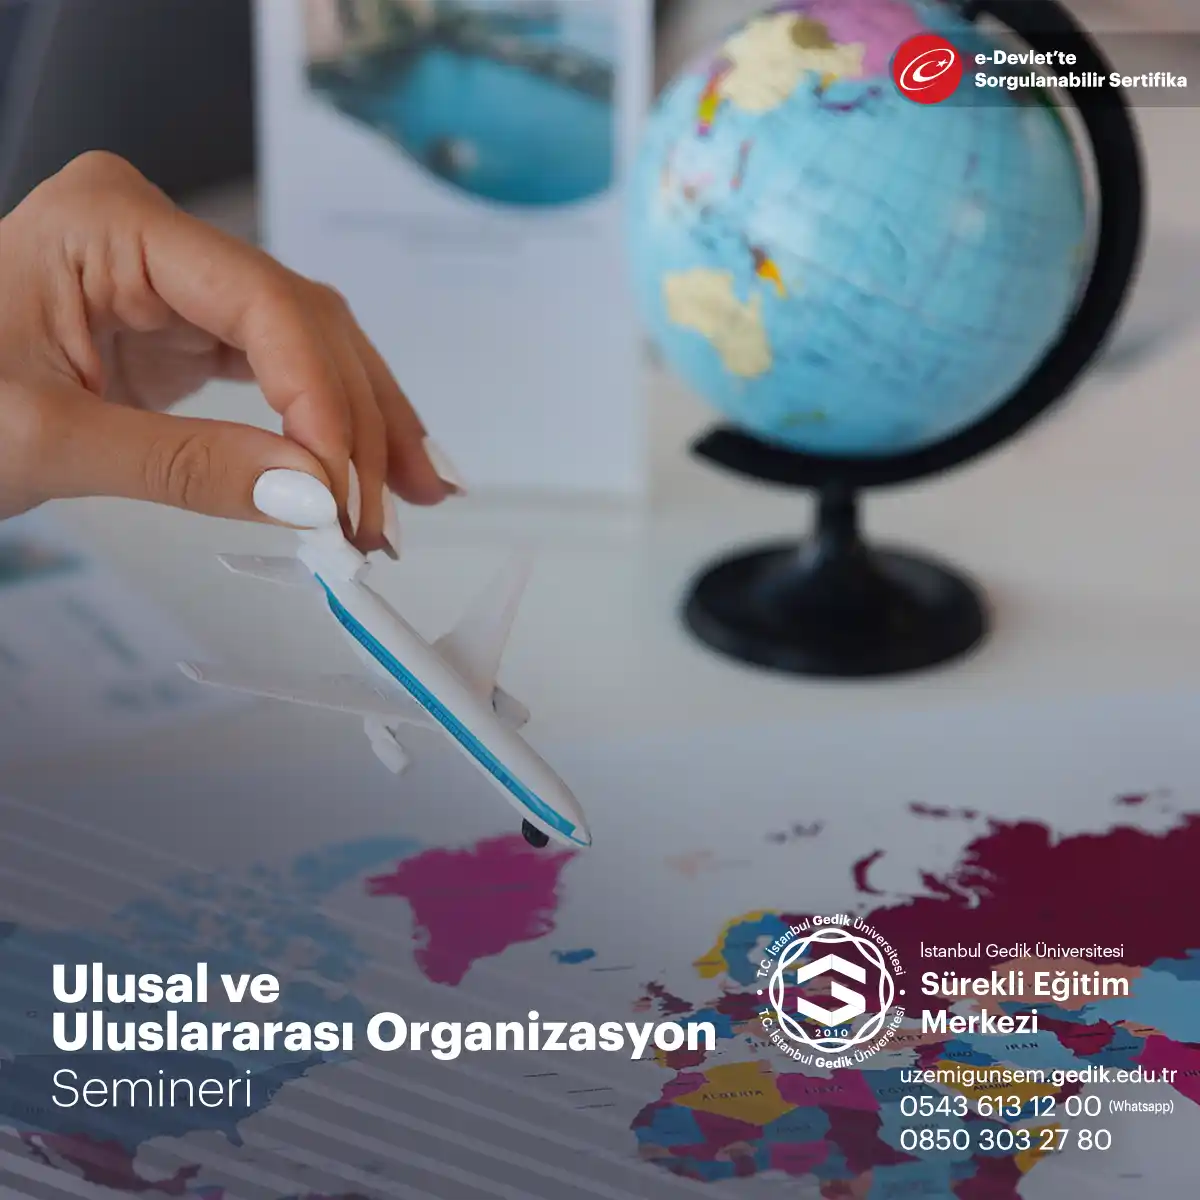 Organizasyon yönetimi alanında kariyer yapmayı hedefleyen ve becerilerini geliştirmek isteyen katılımcılara yönelik bir eğitim programıdır.